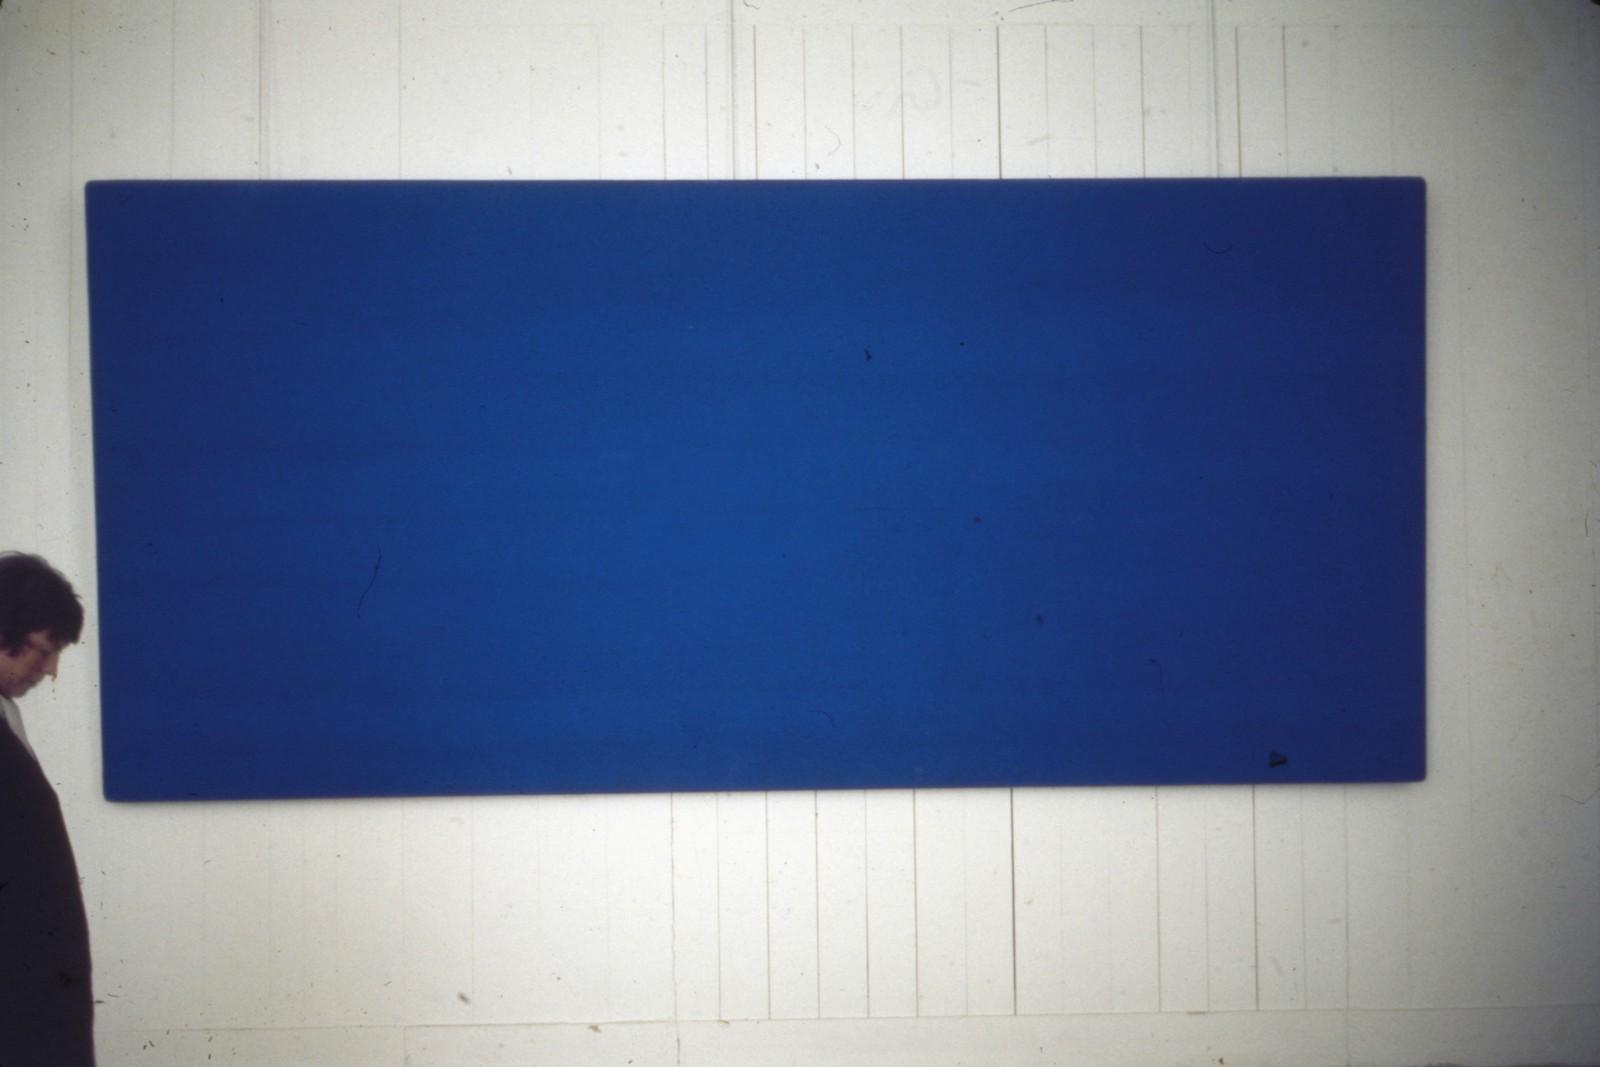 View of the exhibition, "Yves Klein 1928-1962", Musée des arts décoratifs, 1969